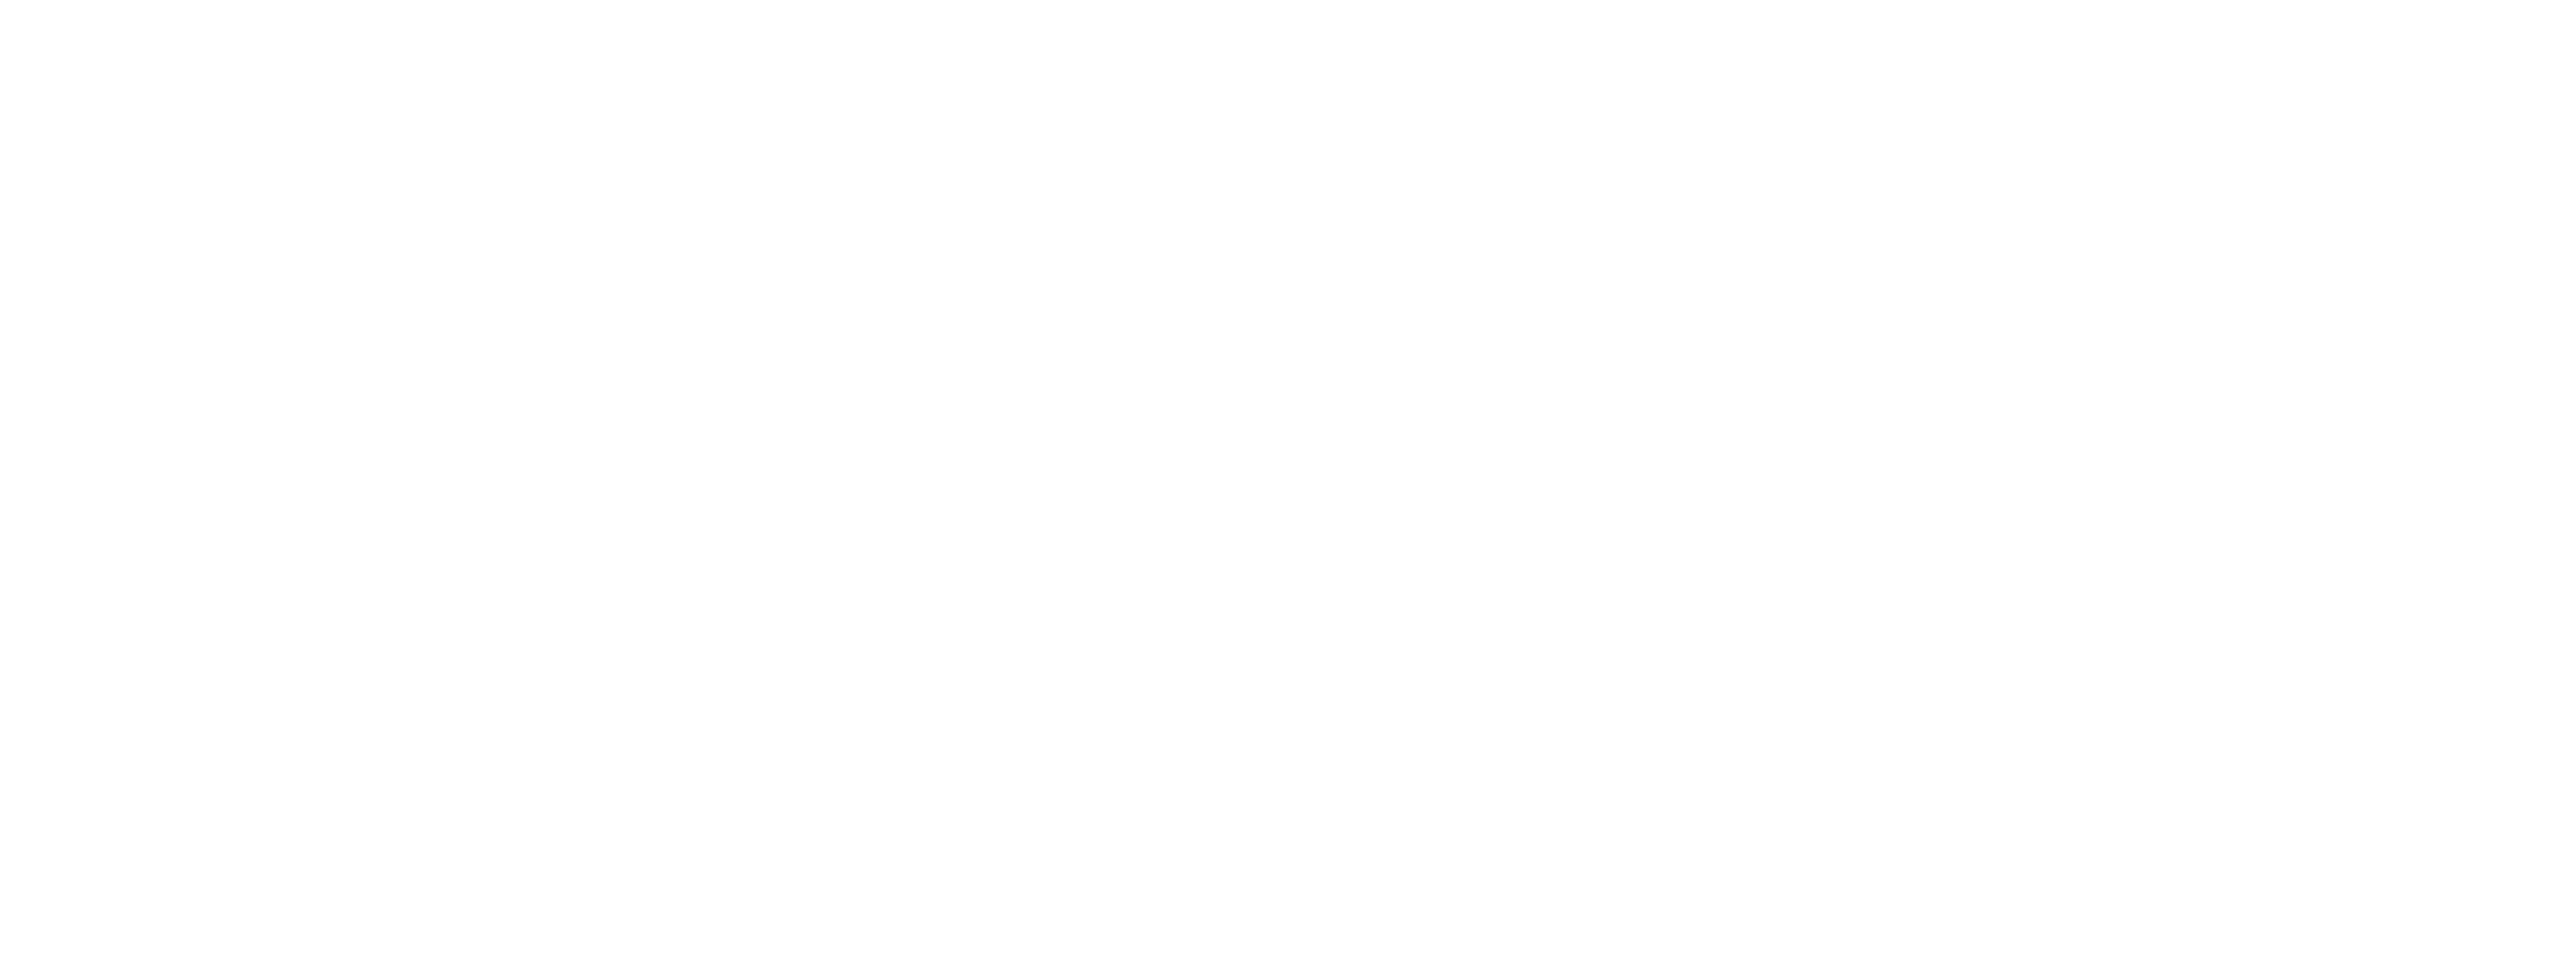 TiVo Logo - Logos